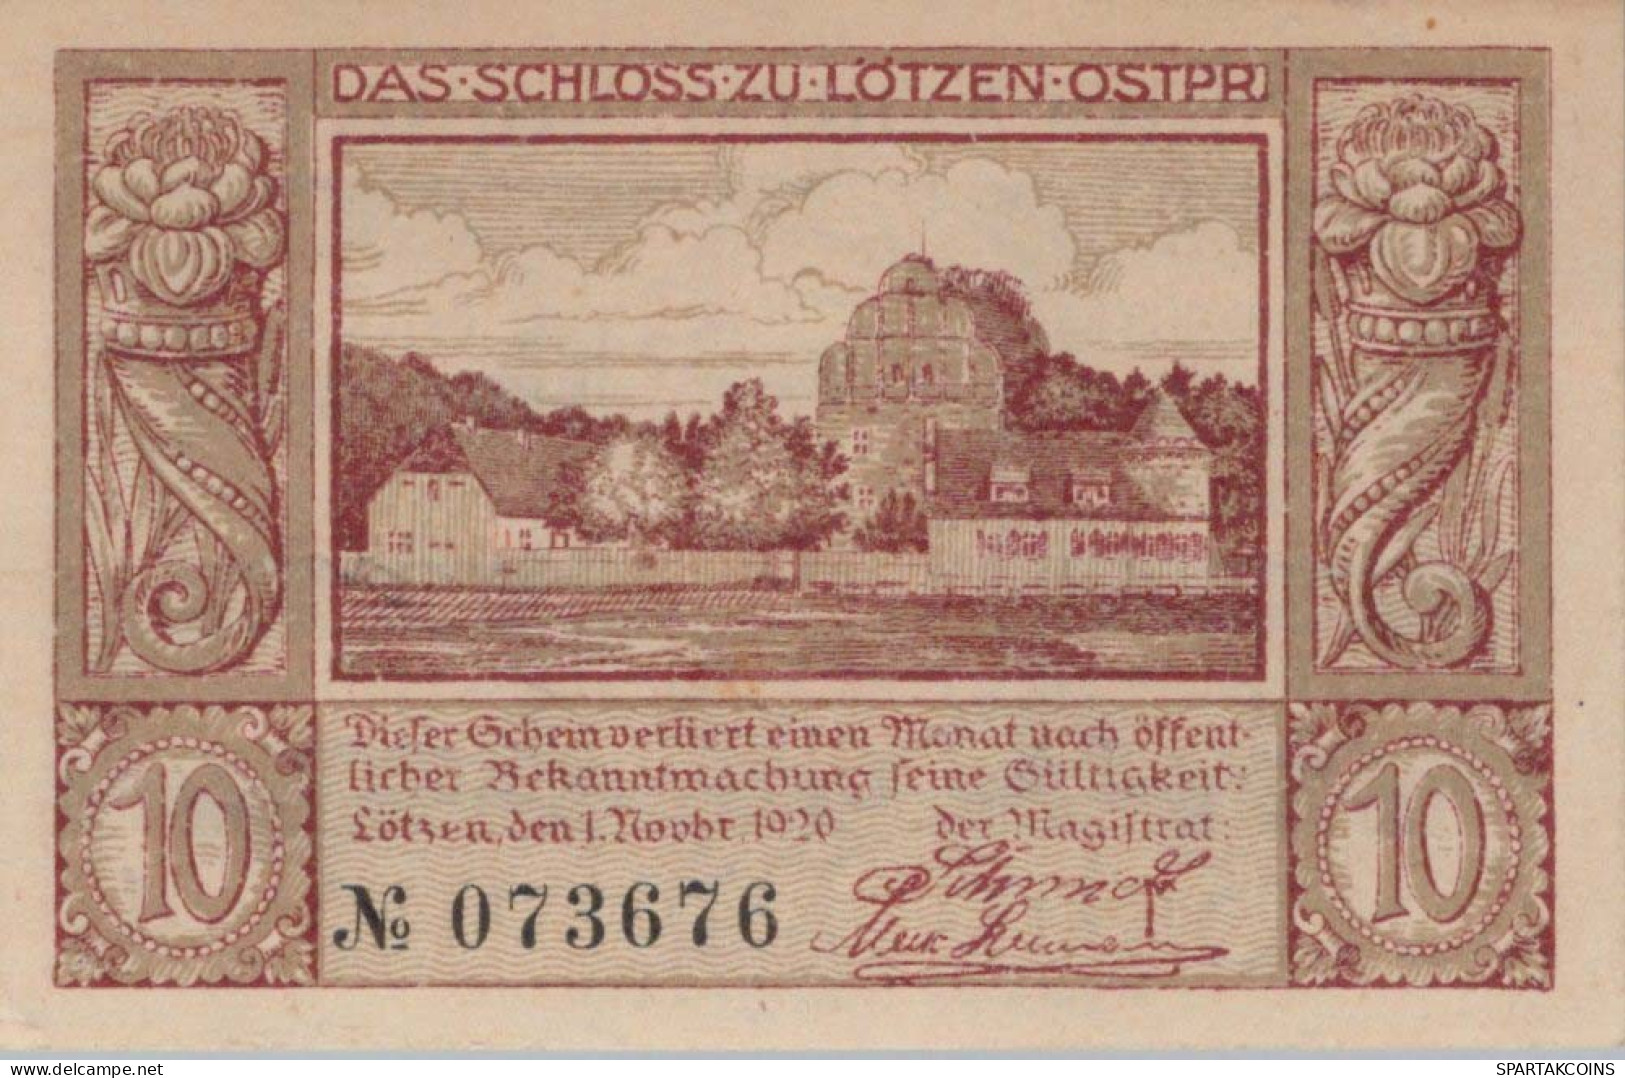 10 PFENNIG 1920 Stadt LoTZEN East PRUSSLAND UNC DEUTSCHLAND Notgeld #PC598 - [11] Local Banknote Issues